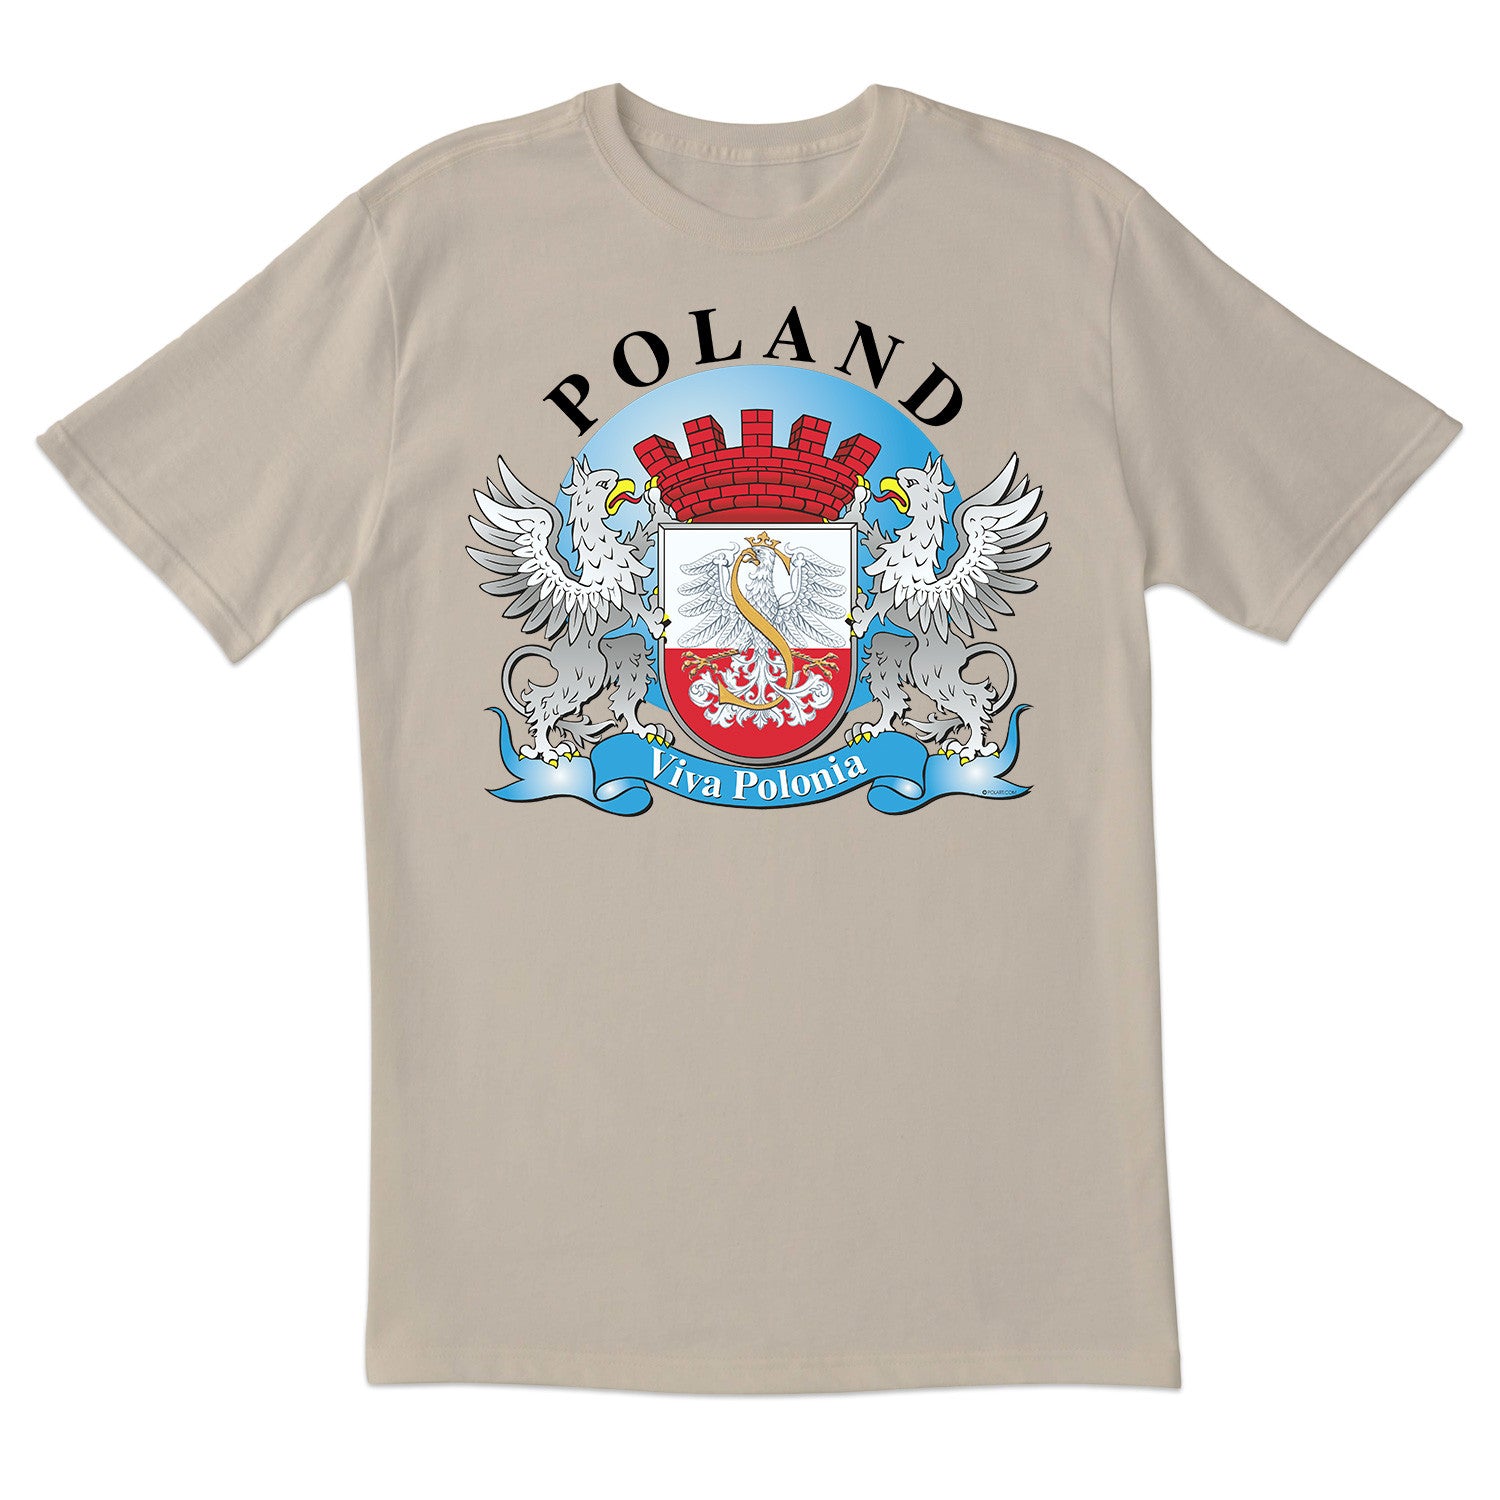 Viva Polonia Short Sleeve Tshirt